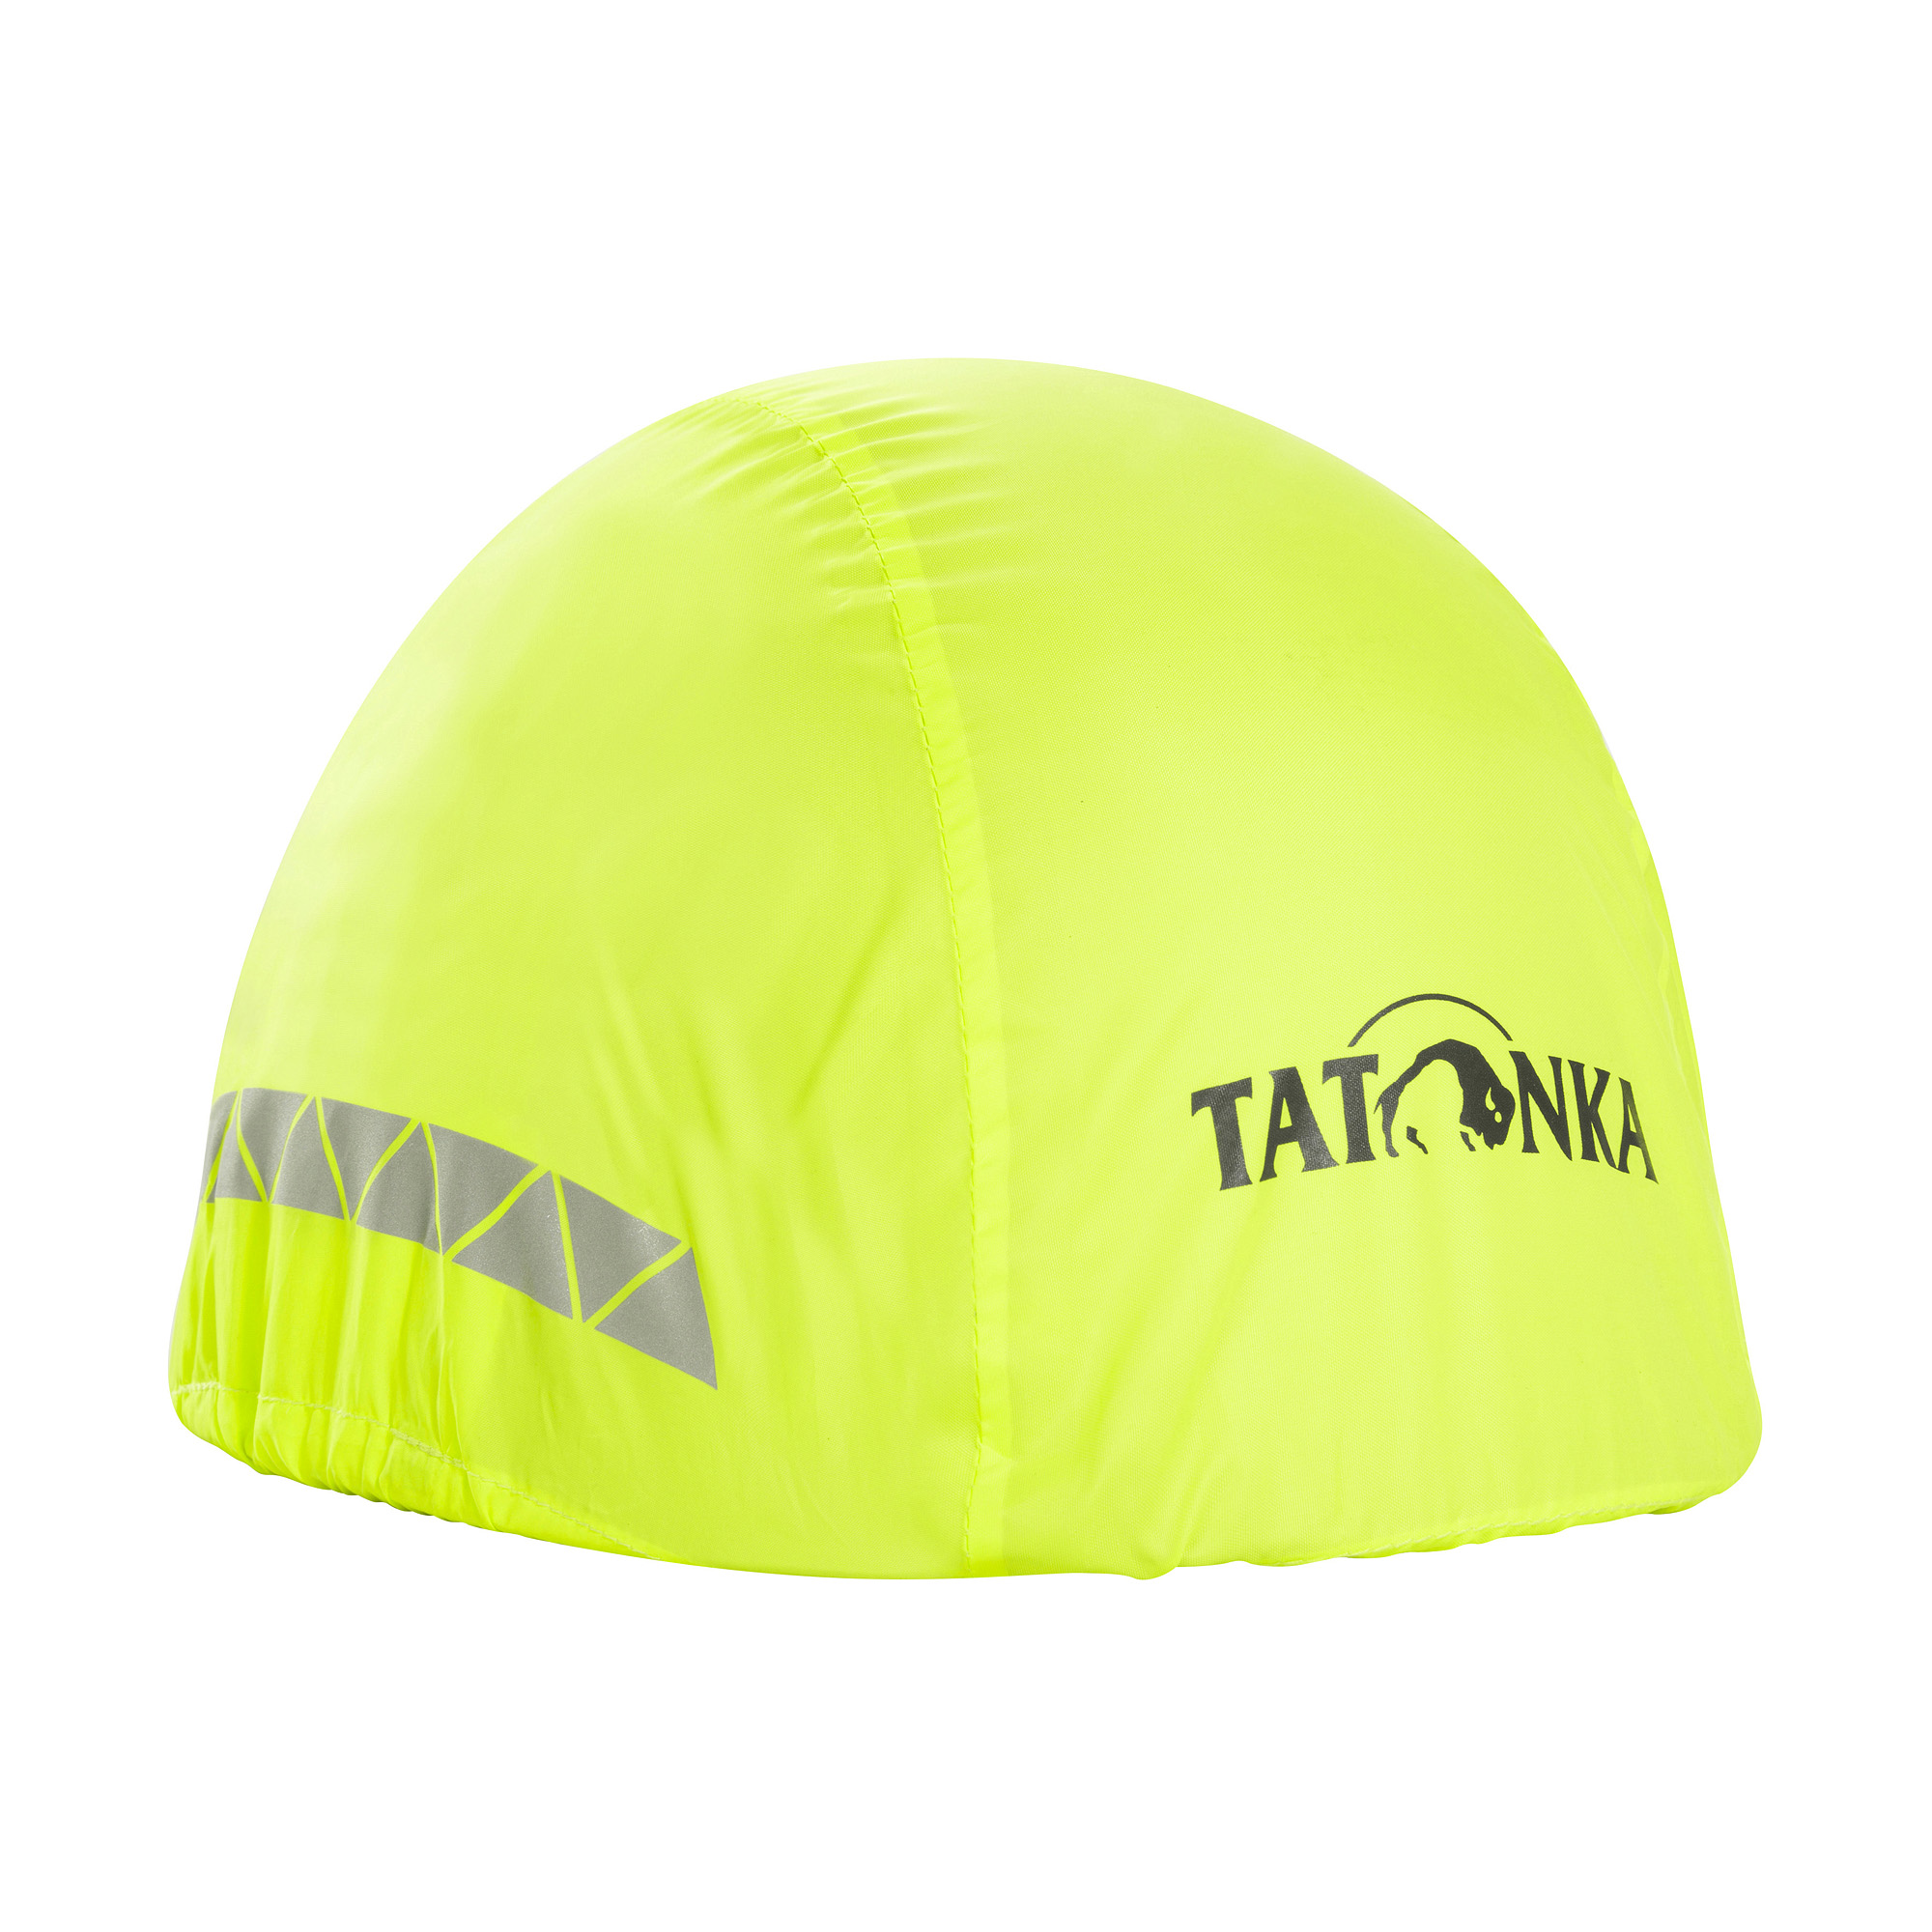 Tatonka Helmet Cover safety yellow gelb Fahrrad-Zubehör 4013236370577